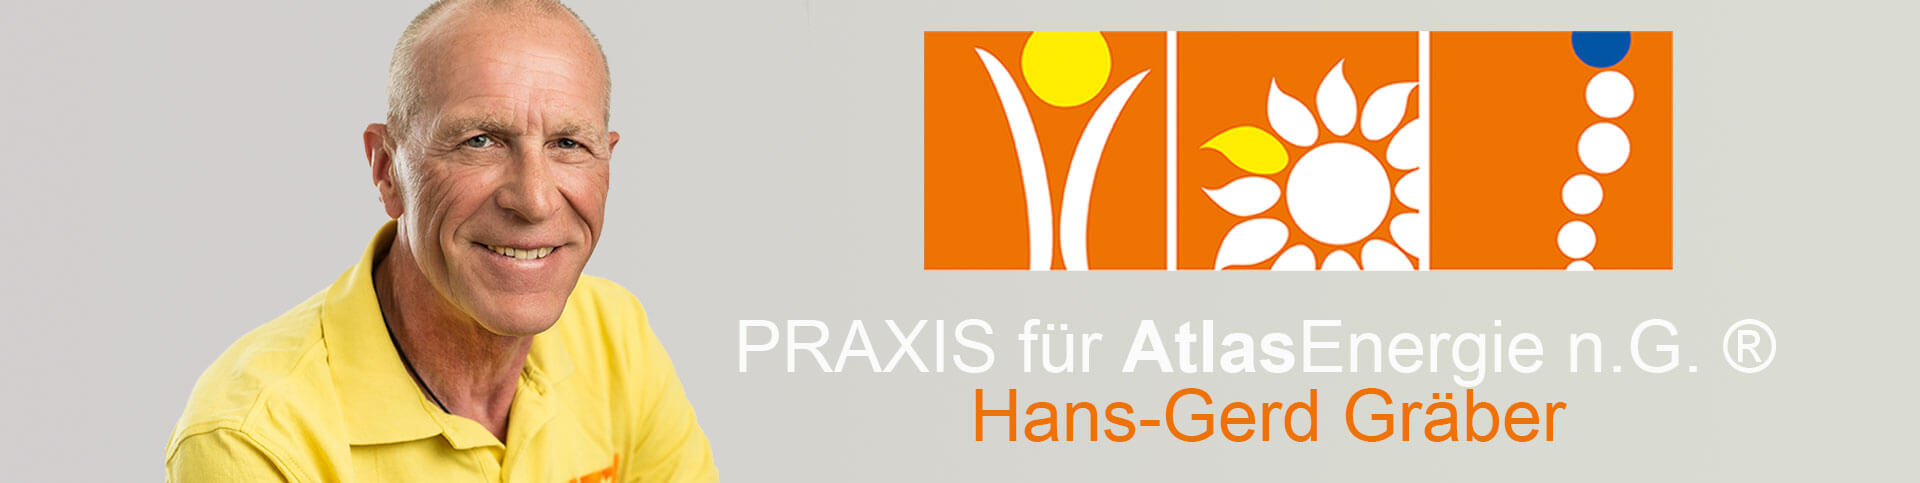 Praxis für Atlasenergie - Hans-Gerd Gräber